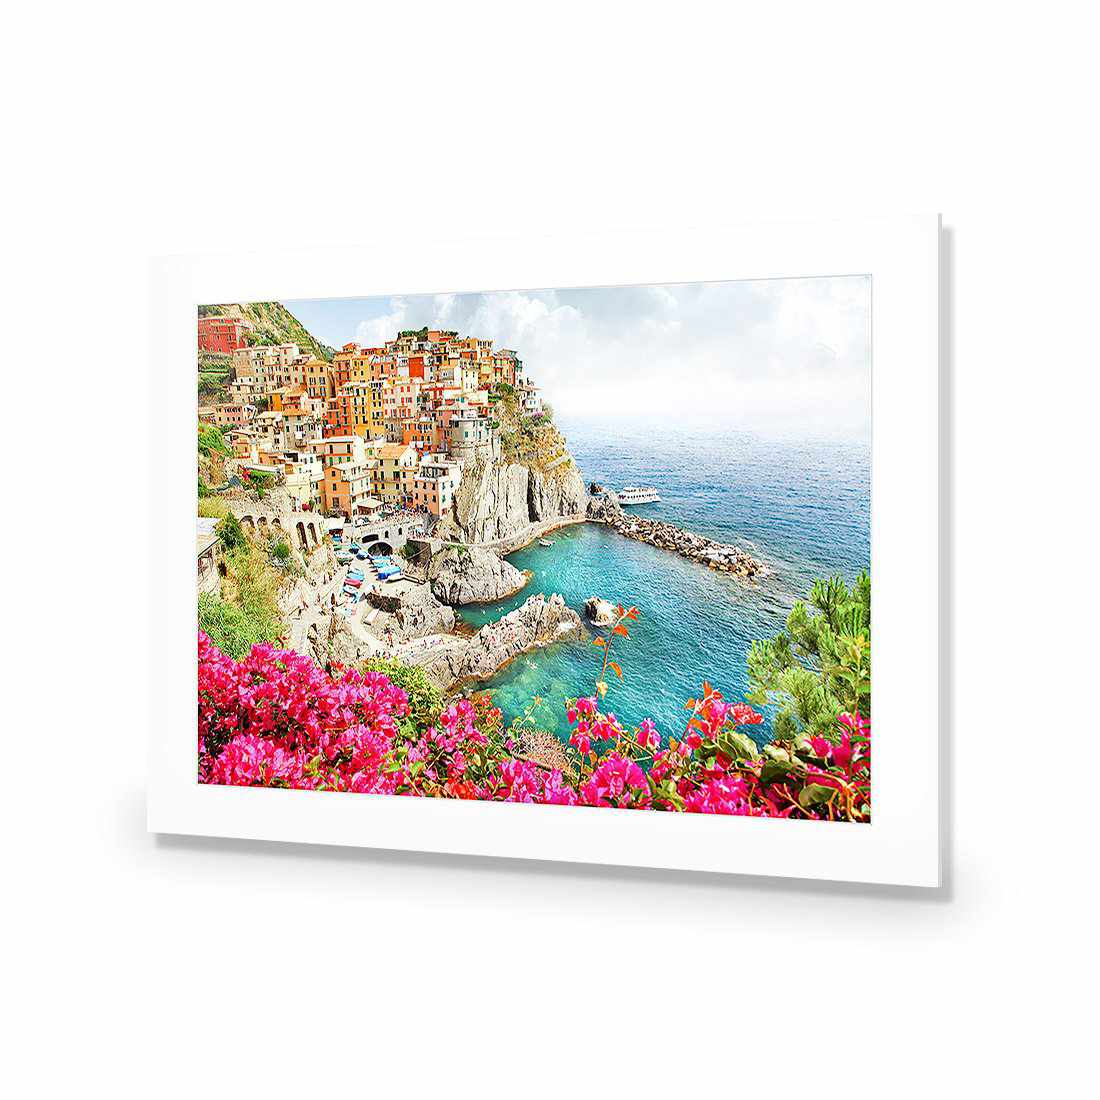 Cinque Terre in Italy-Acrylic-Wall Art Design-With Border-Acrylic - No Frame-45x30cm-Wall Art Designs